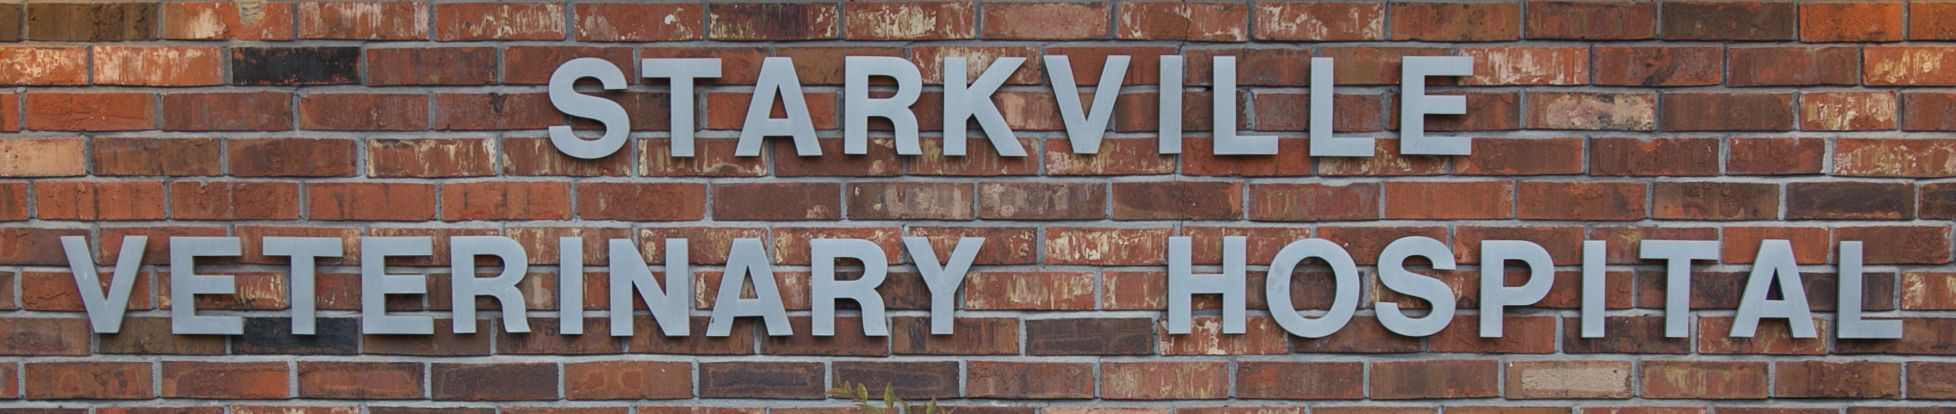 Starkville Veterinary Hospital